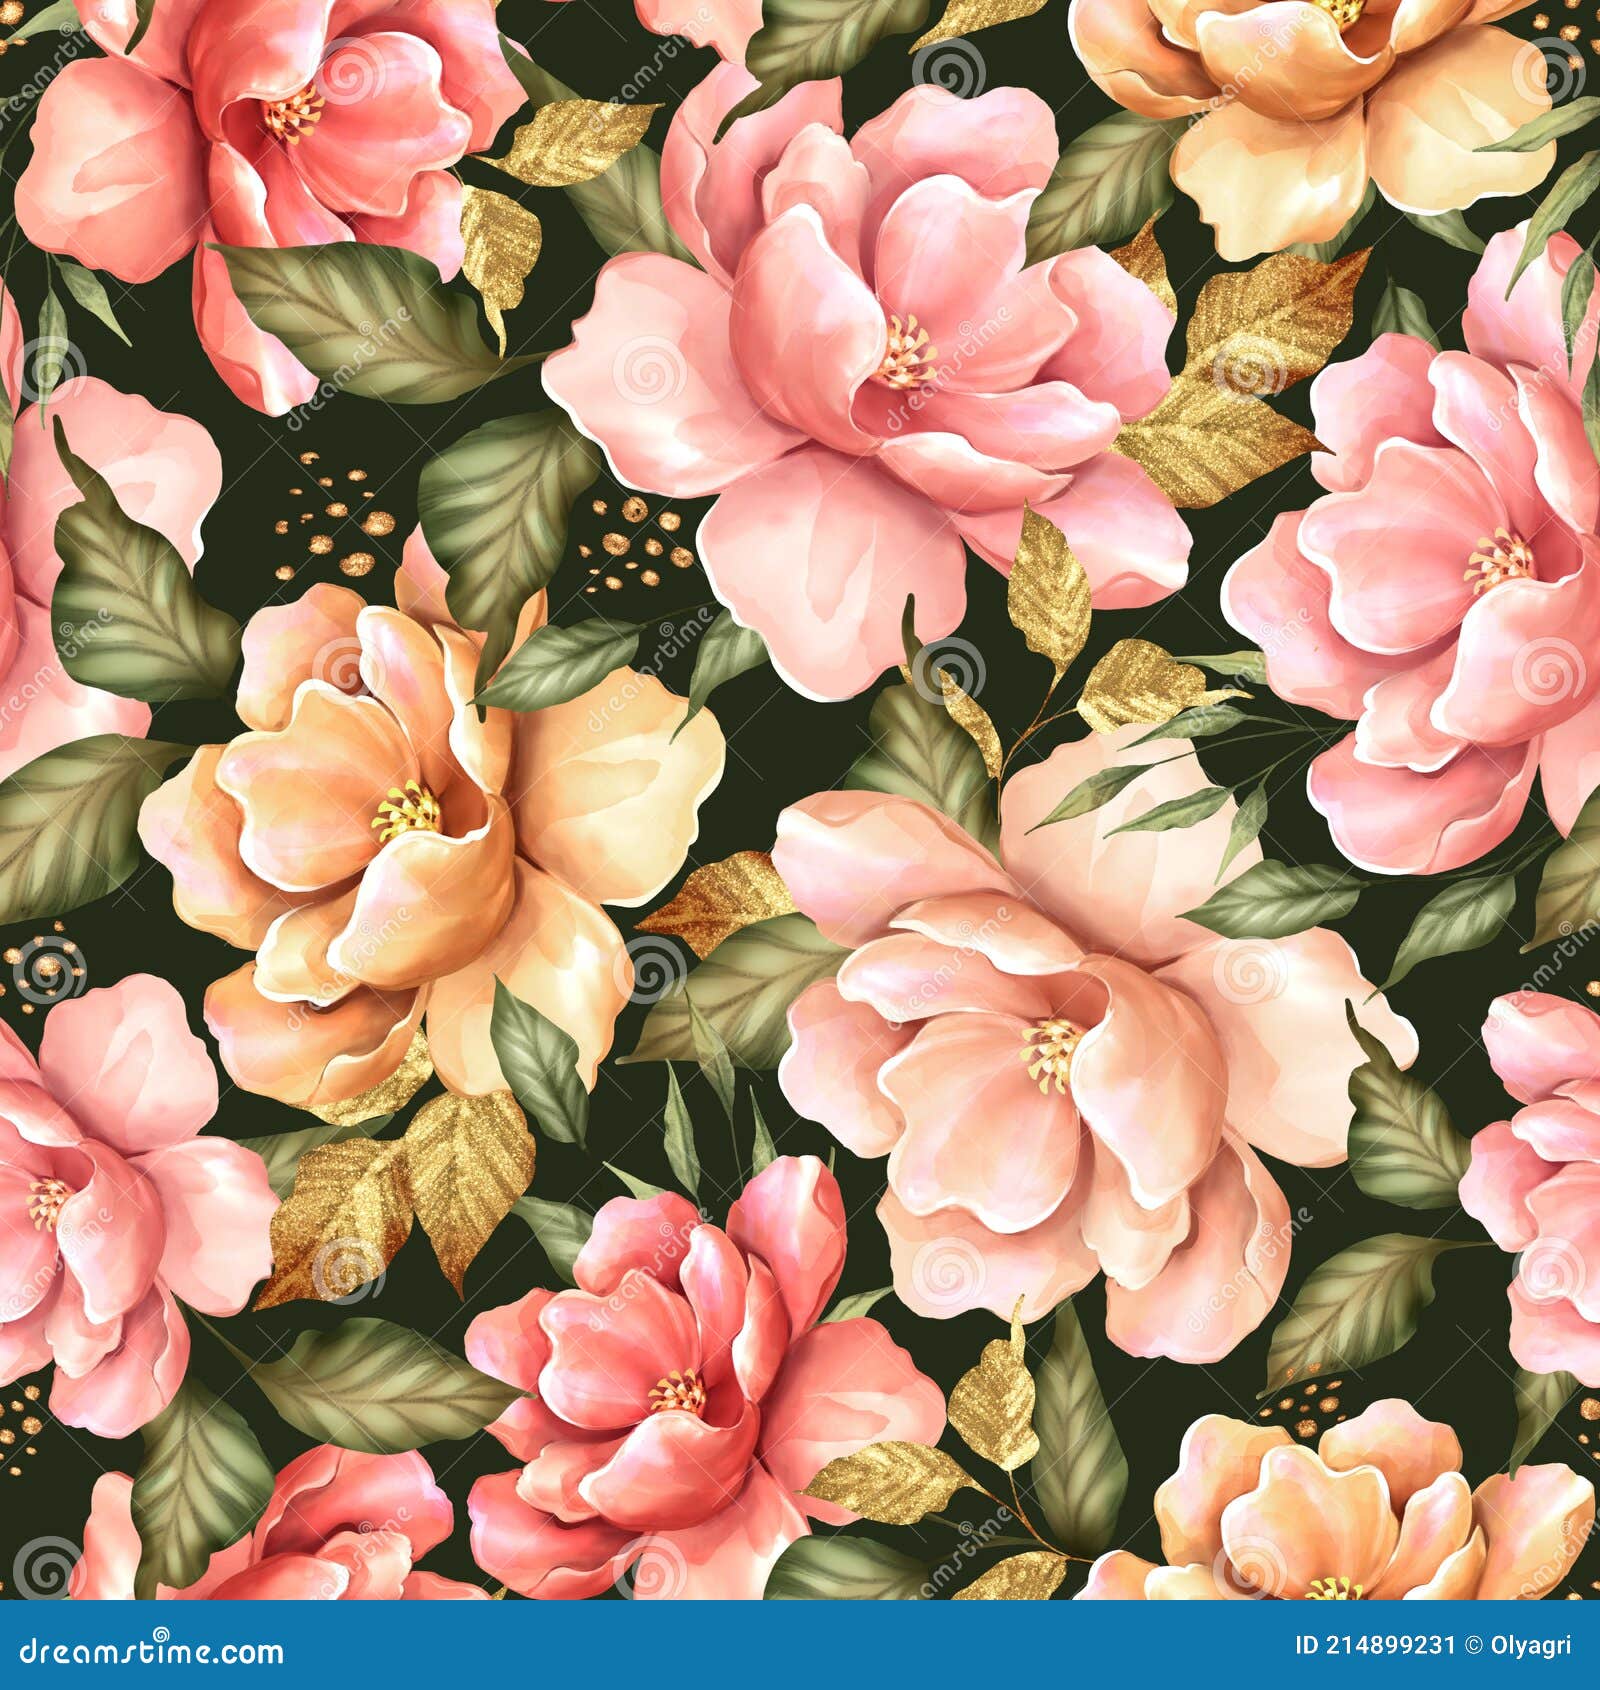 Hình ảnh về hoa vàng hồng trên nền họa tiết hoa cỏ xanh đậm sẽ mang lại cảm giác mát mẻ, tươi mới cho người xem. Sắc màu tươi sáng và hình ảnh hoa cỏ tươi tắn khiến bức tranh trở nên sống động và thu hút nhìn ngay từ ánh mắt đầu tiên.